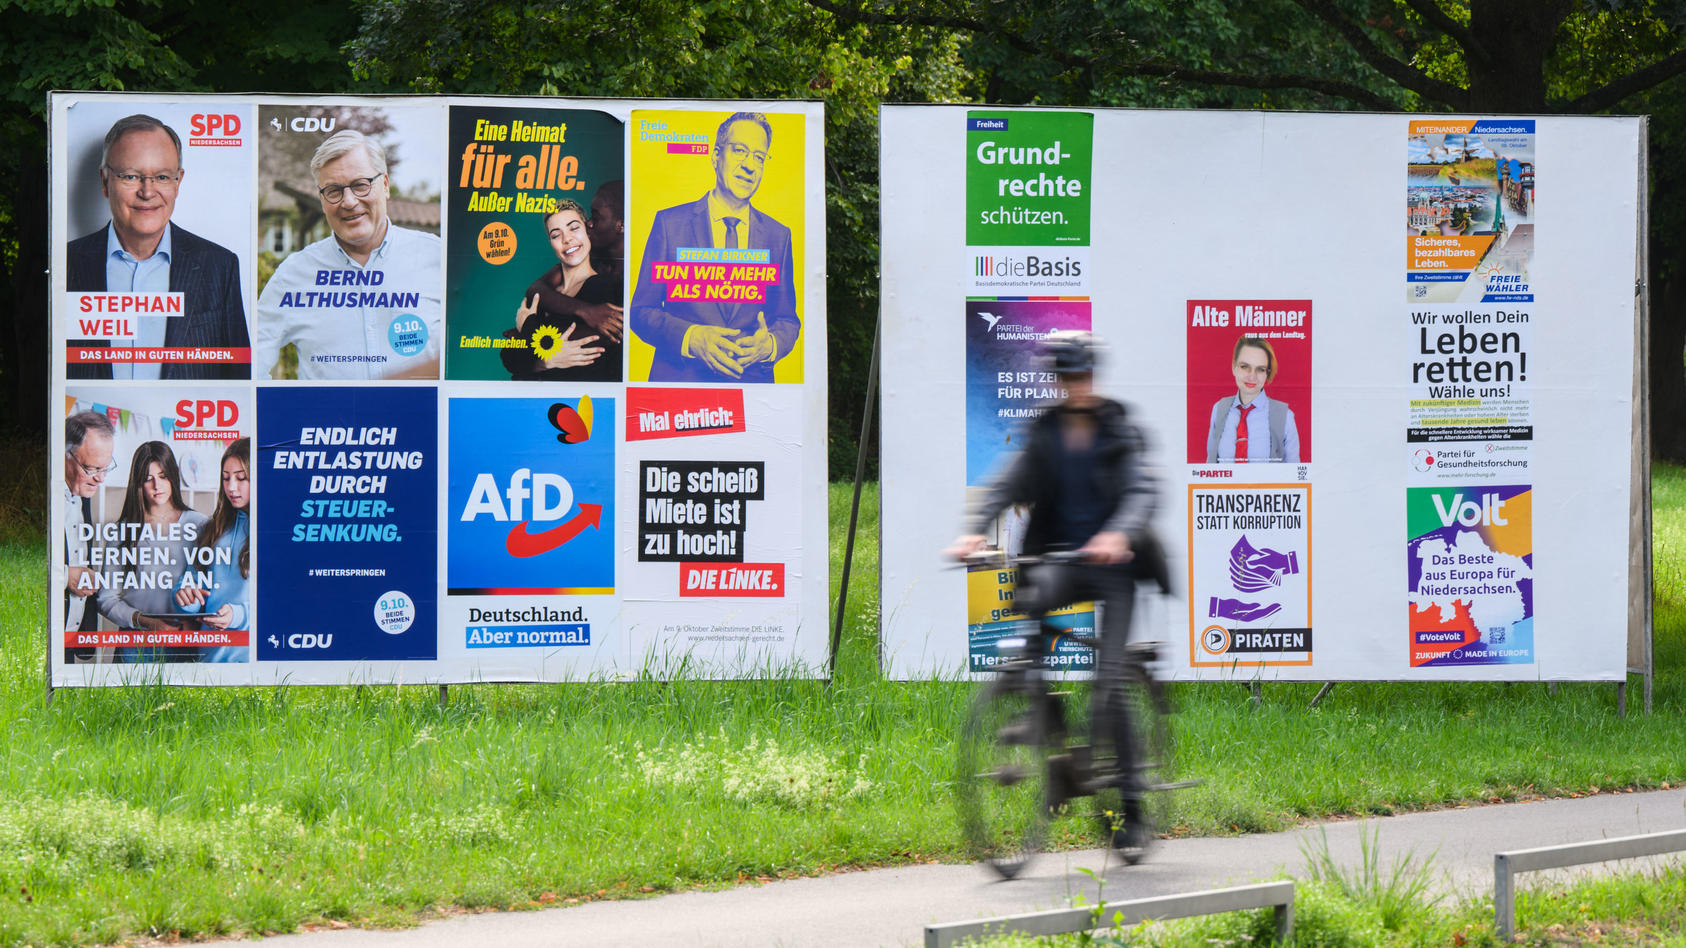 Ein Radfahrer radelt an einer Wand mit Wahlplakaten verschiedener Parteien vorbei.